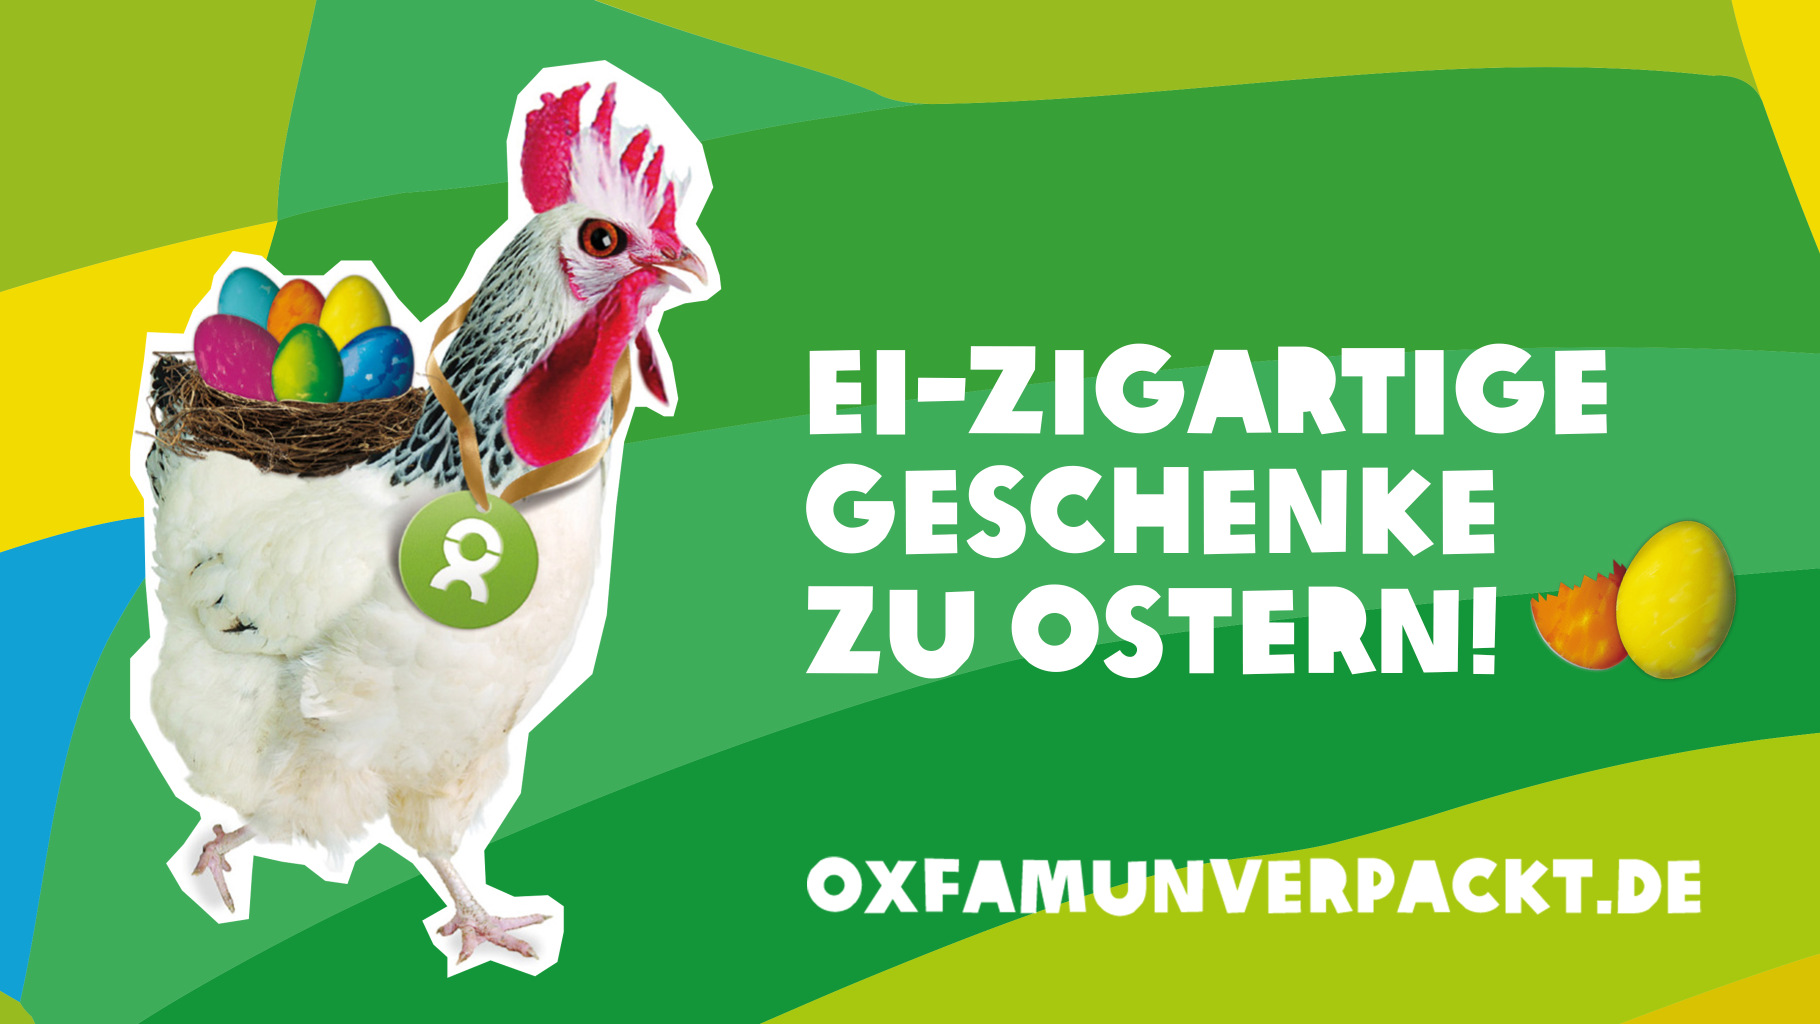 Ostergeschenke von OxfamUnverpackt